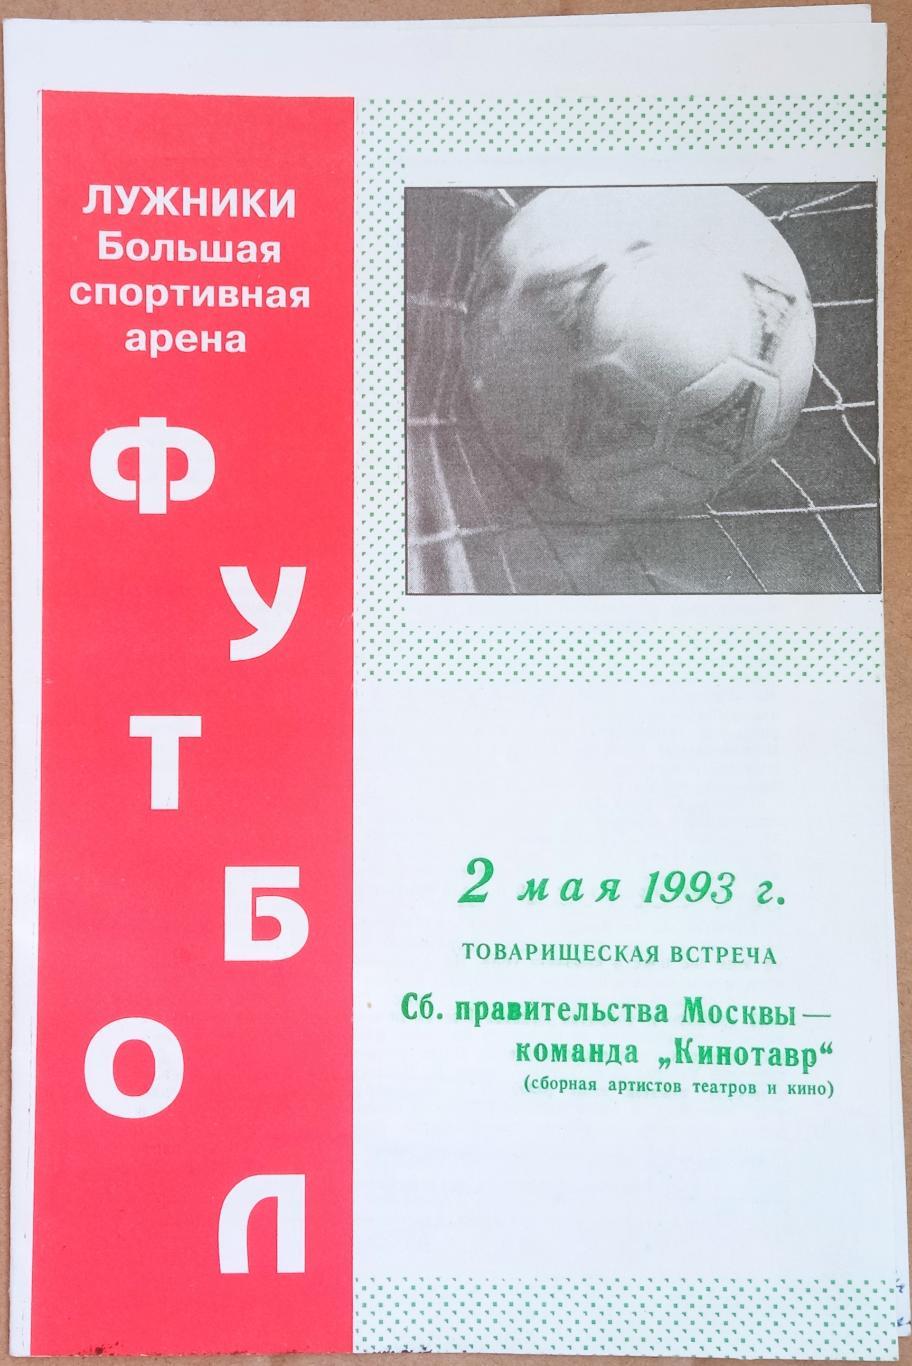 Правительство Москвы – Кинотавр (Сборная артистов театра и кино) 02.05.1993